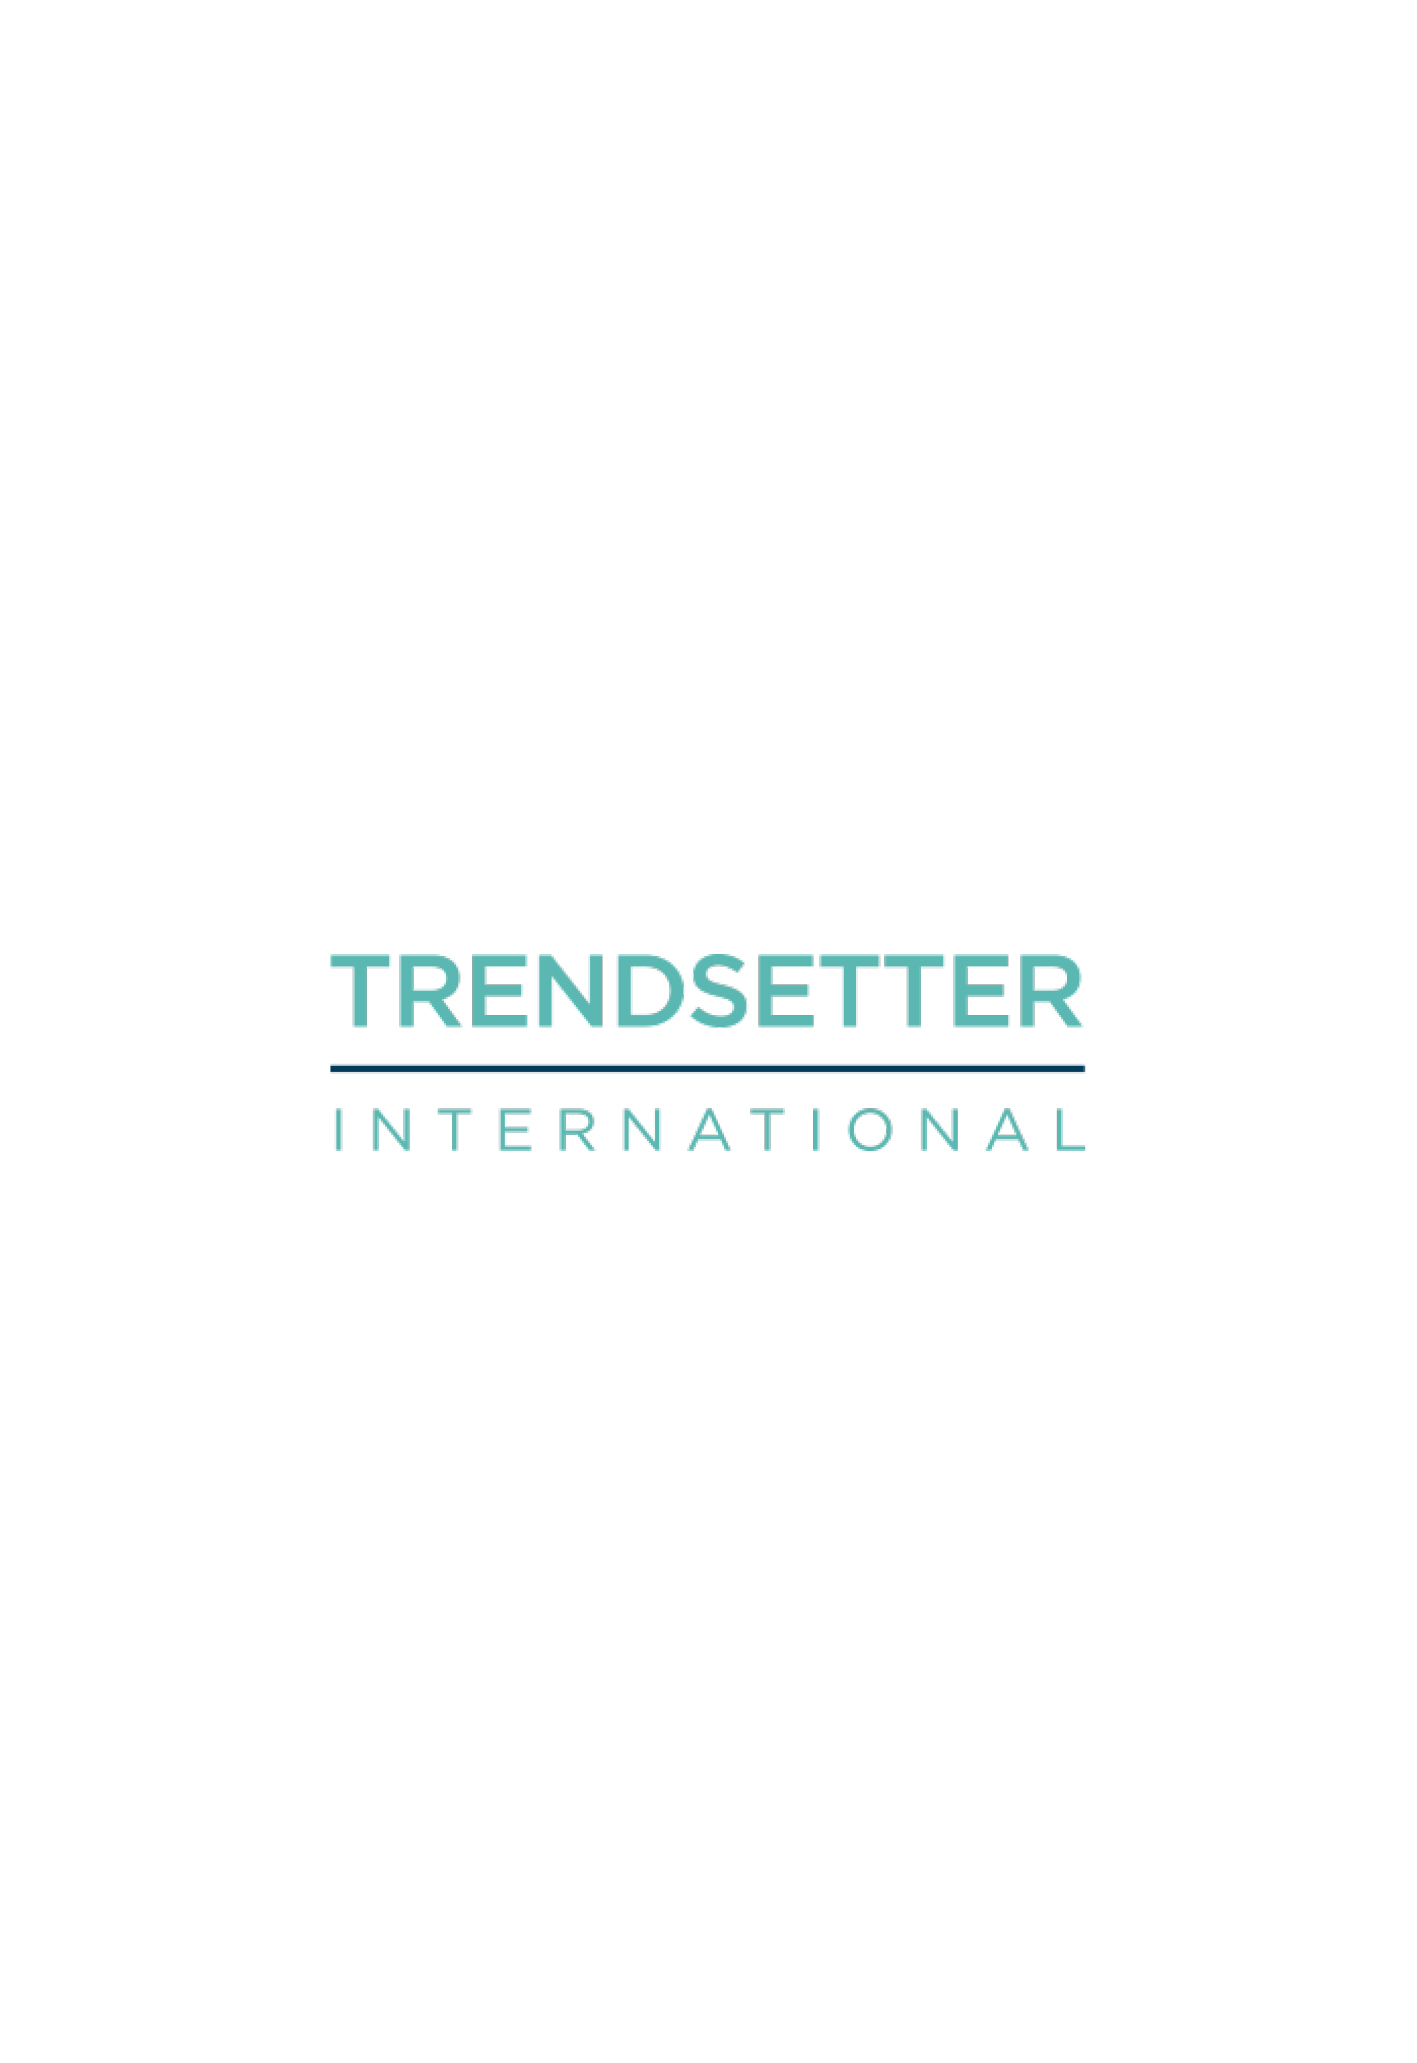 Trendsetter Original Logo